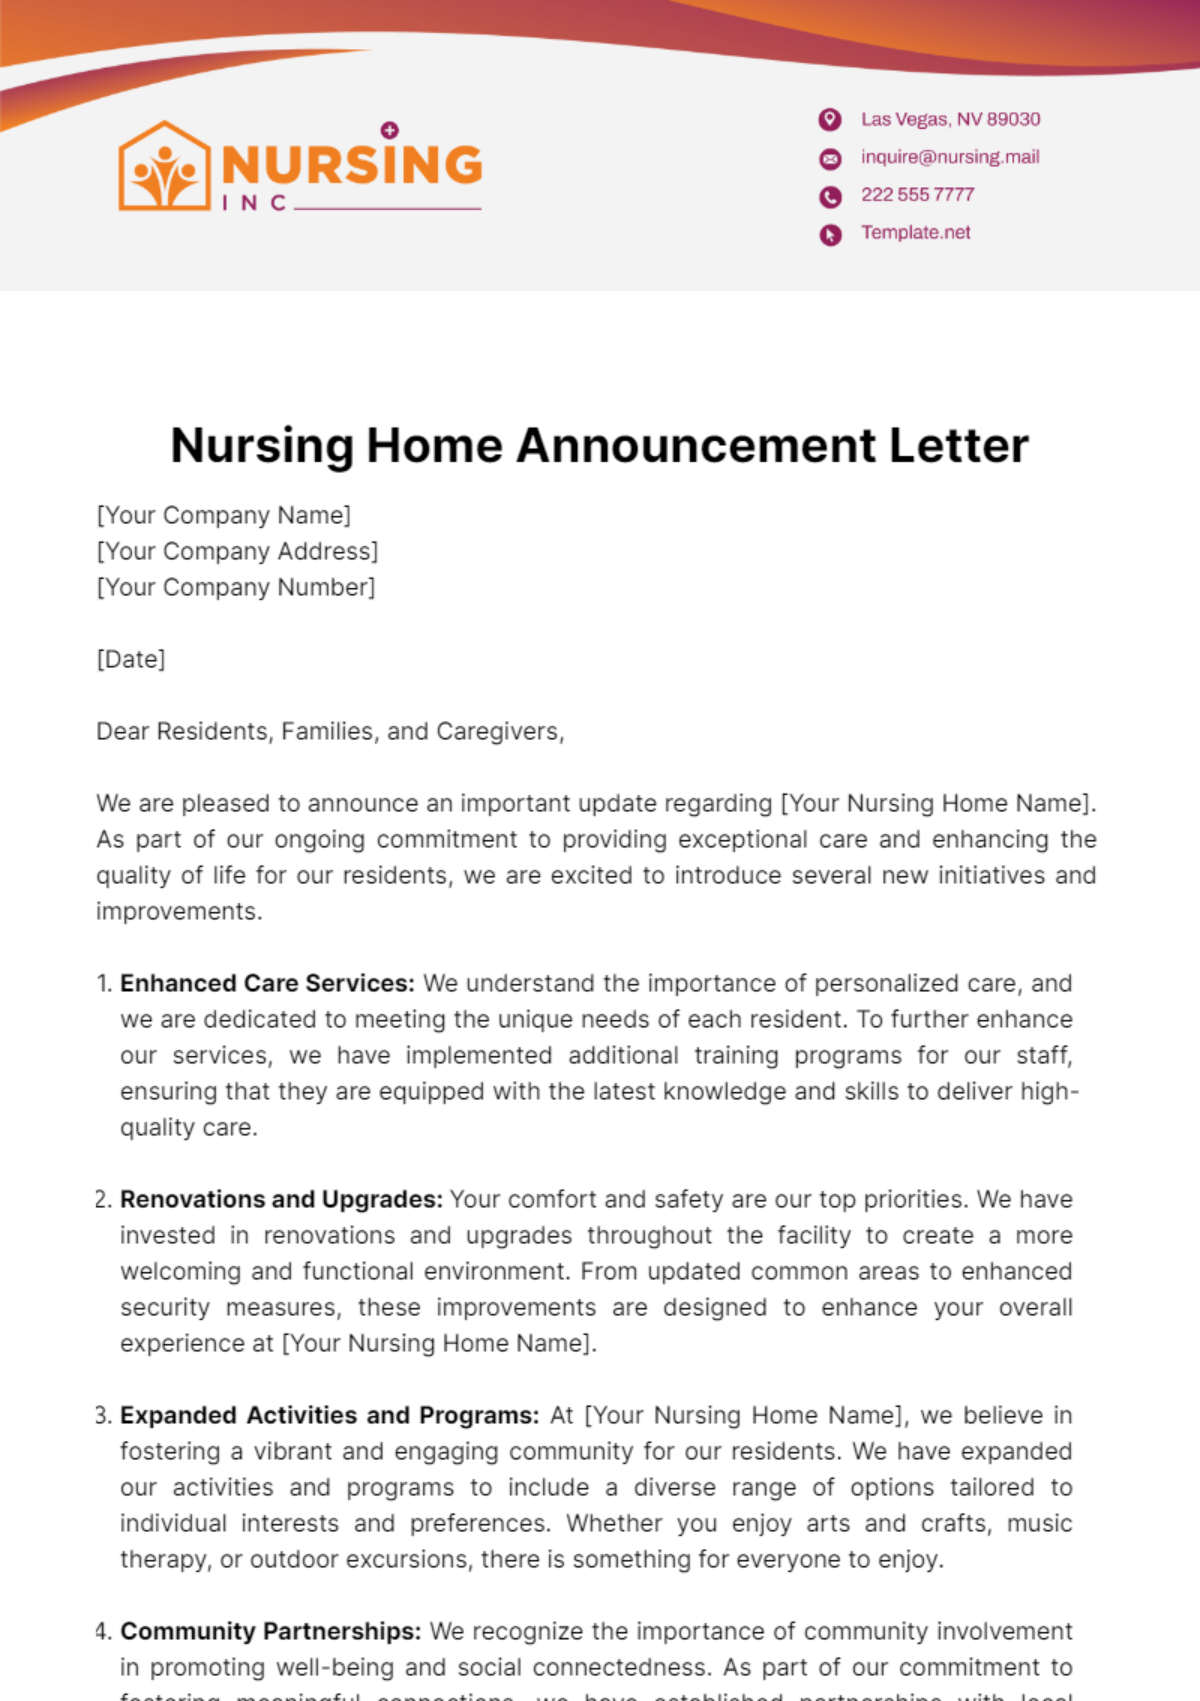 Nursing Home Announcement Letter Template